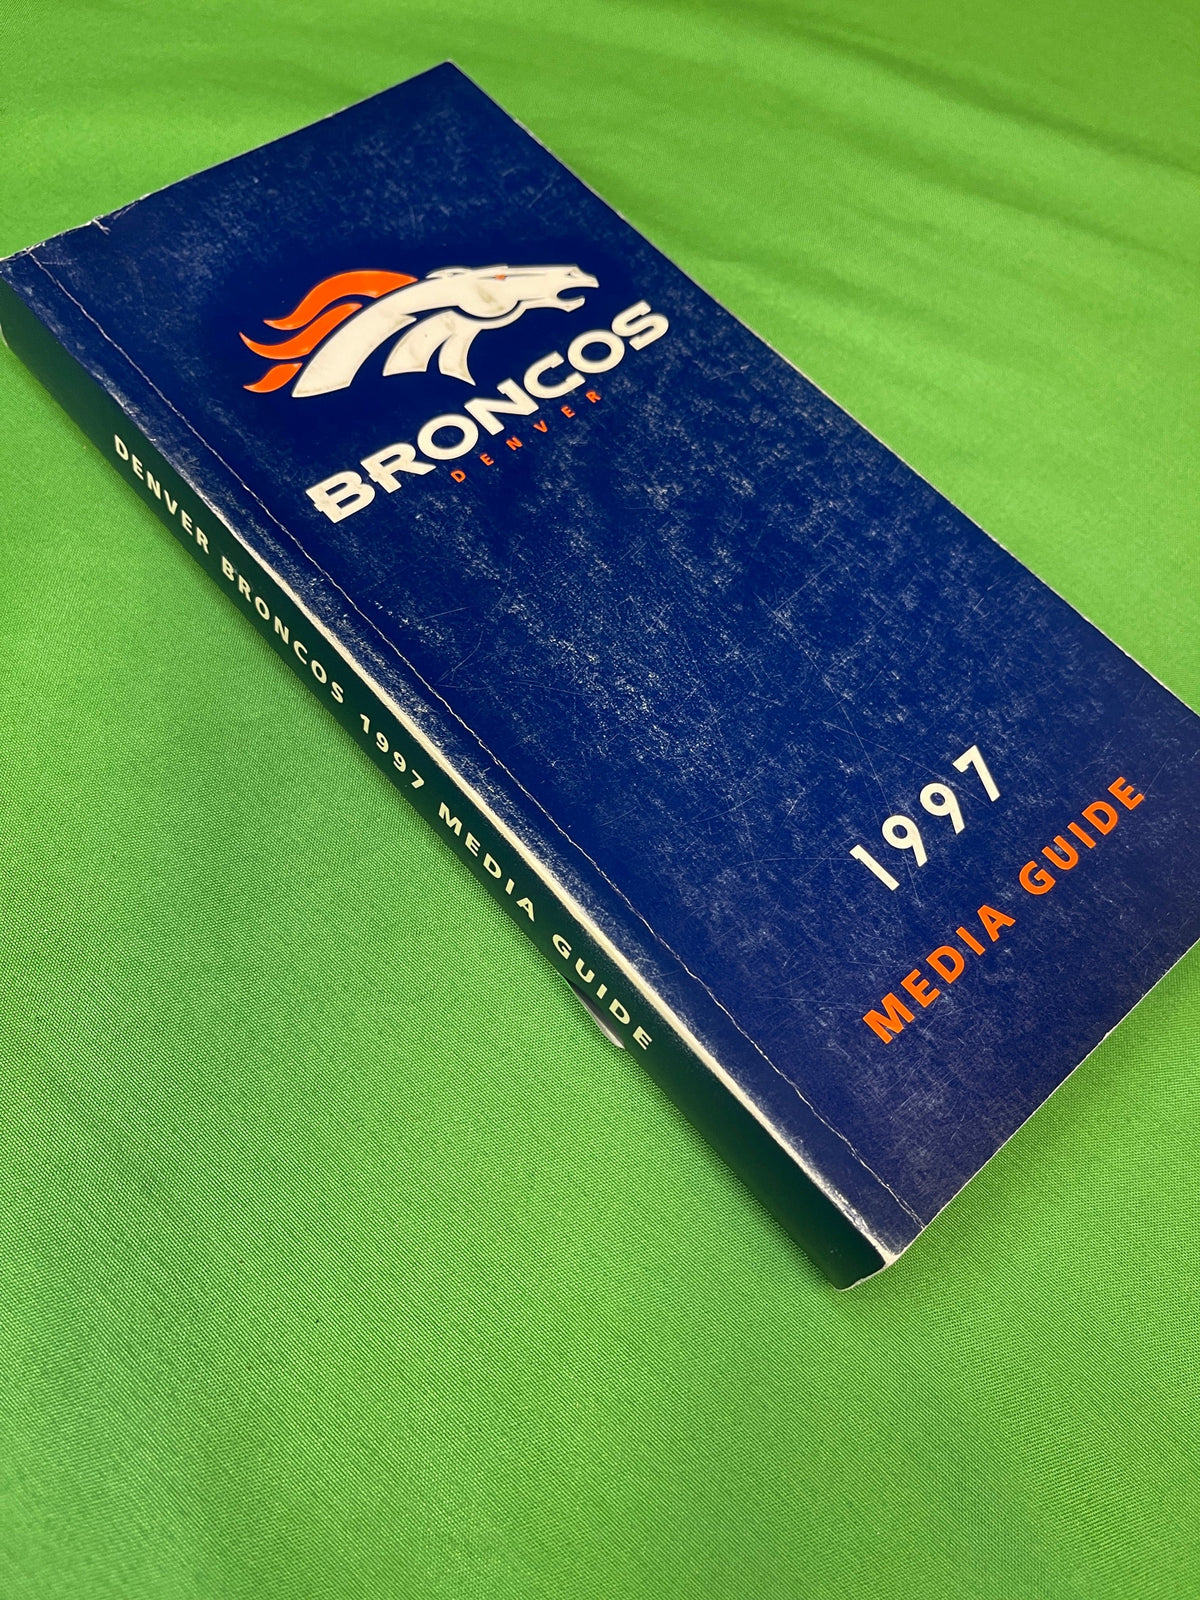 NFL Denver Broncos Vintage 1997 Media Guide Press Book Collectable